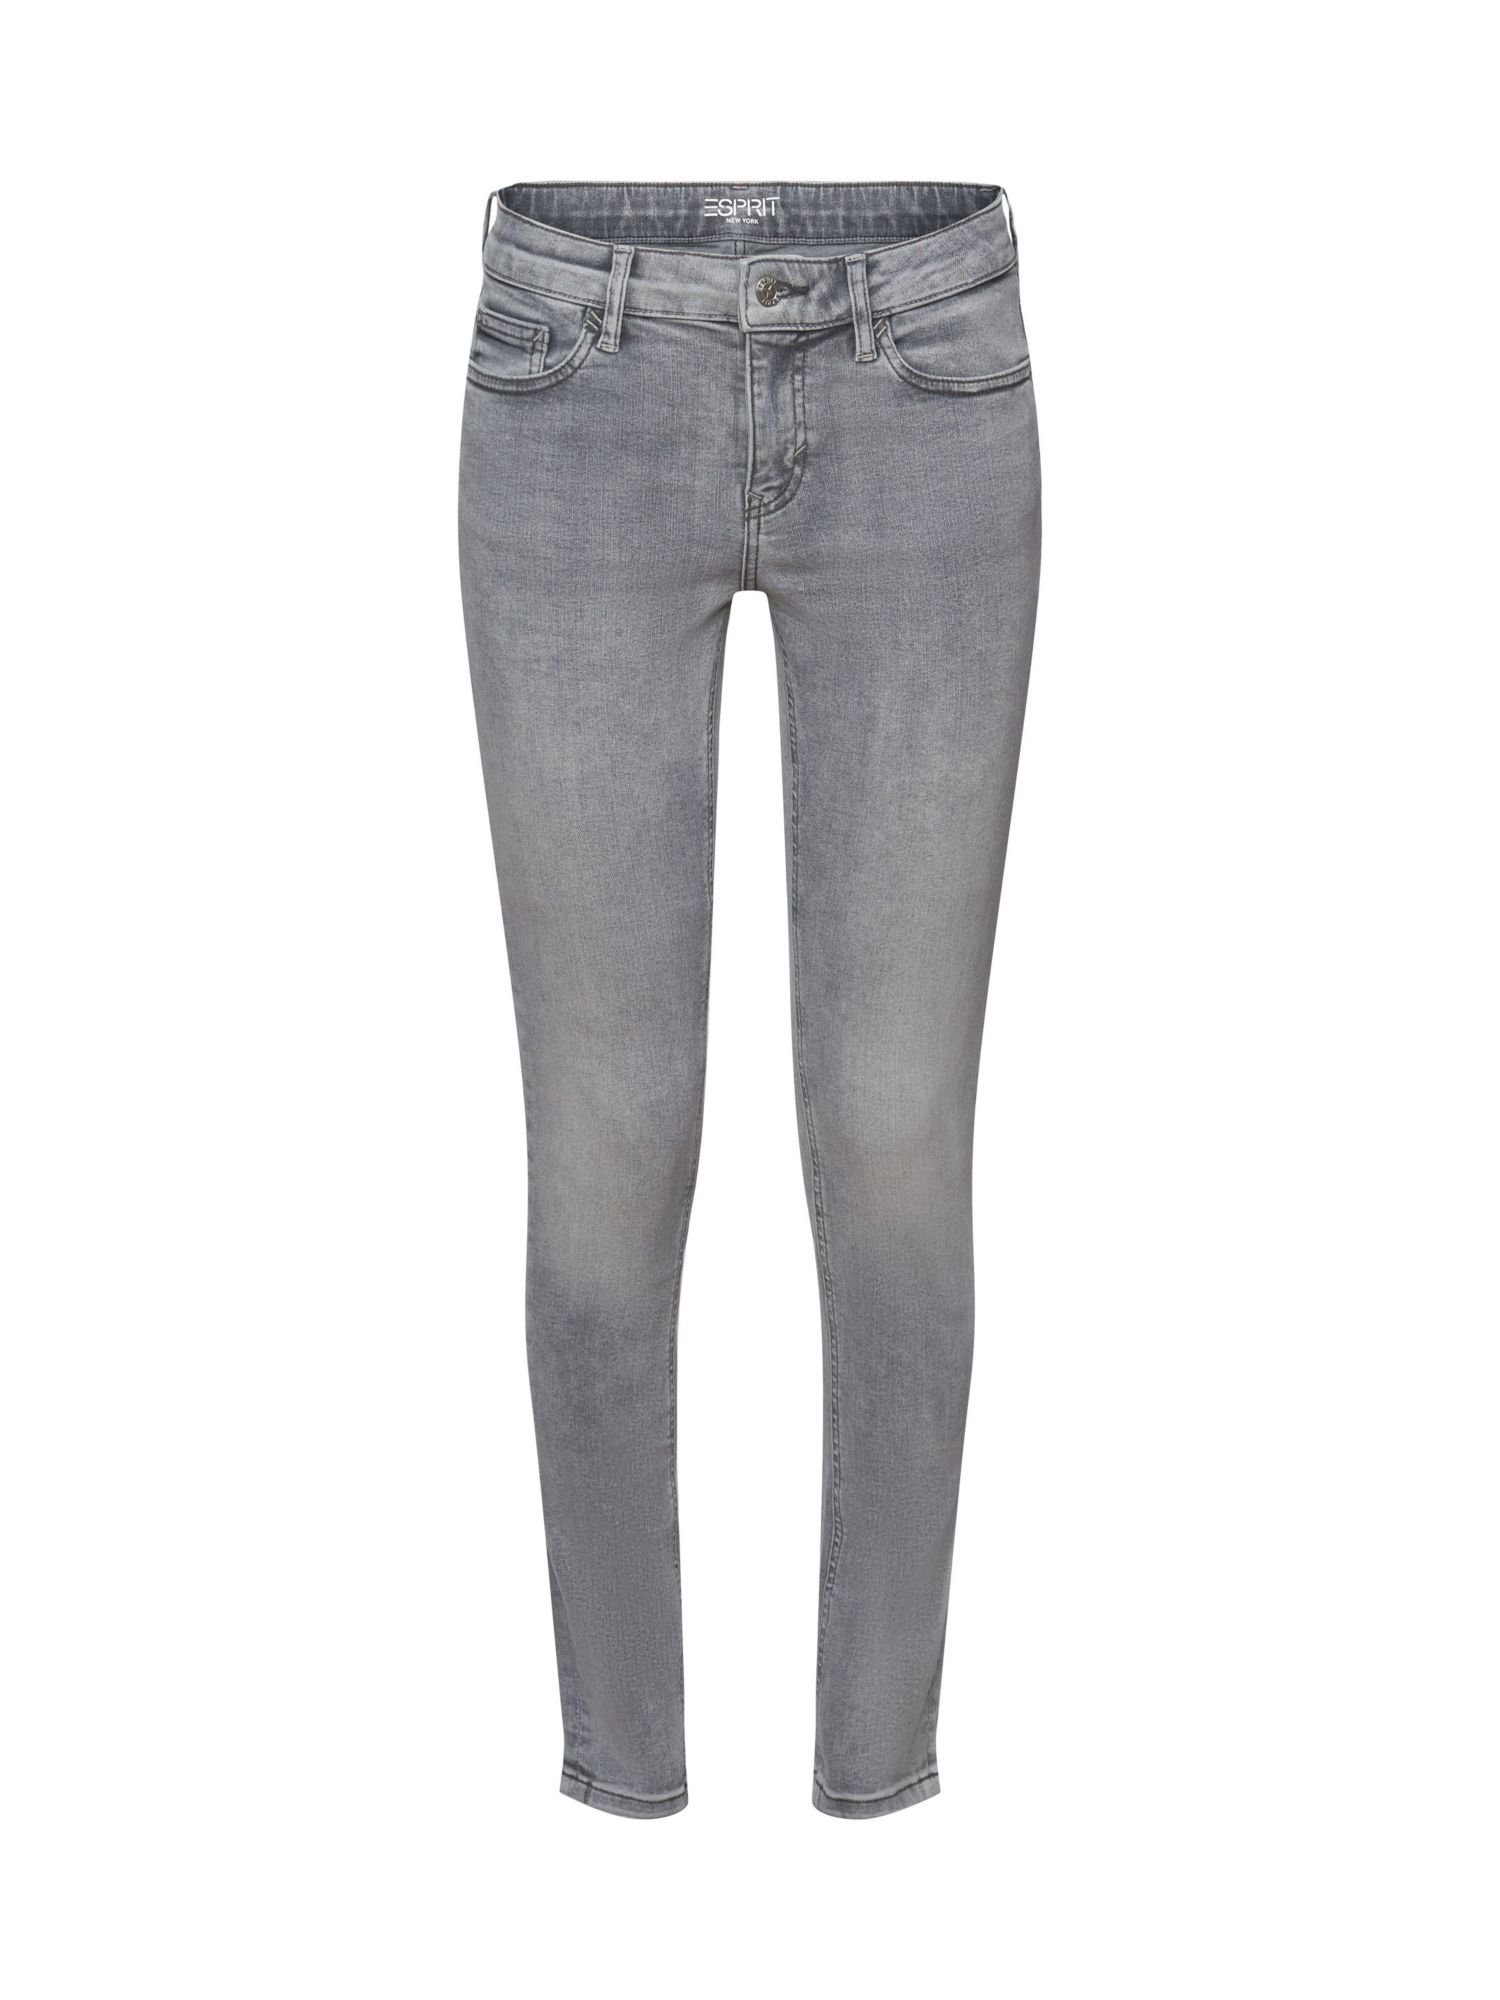 Esprit Skinny-fit-Jeans Skinny Jeans mit mittlerer Bundhöhe, Denimqualität  aus Baumwollmix mit zusätzlichem Stretchanteil